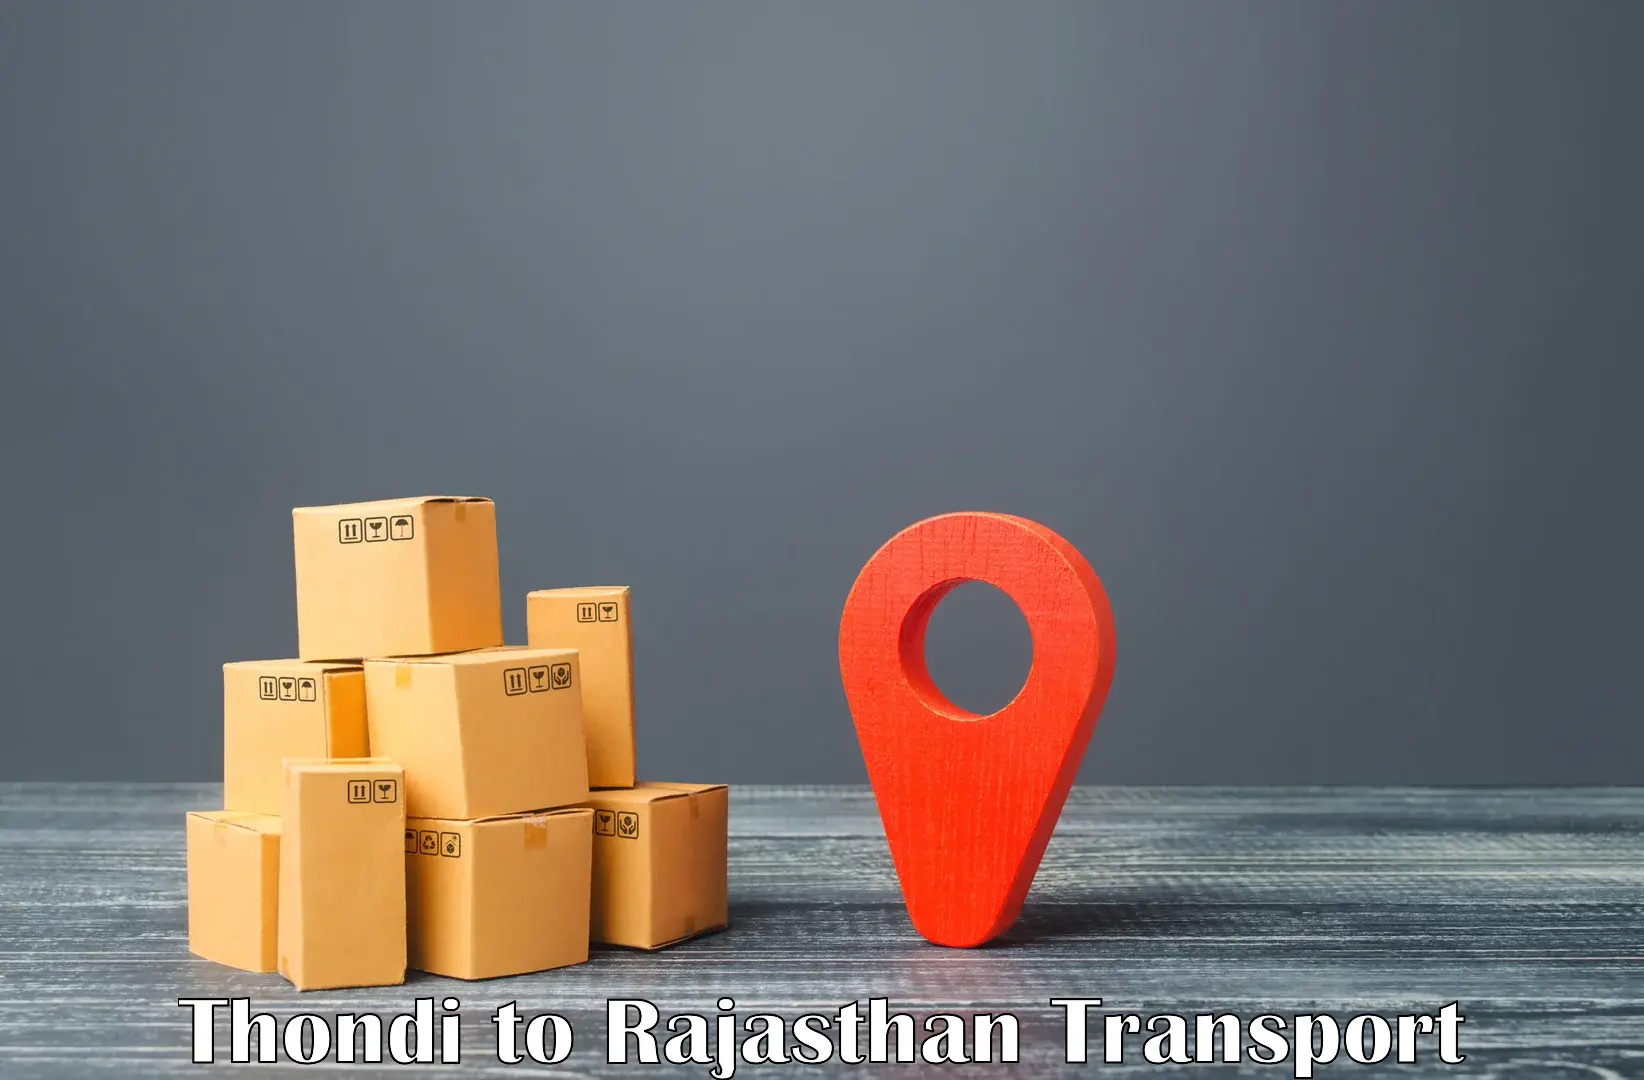 Cycle transportation service Thondi to Rajgarh Rajasthan